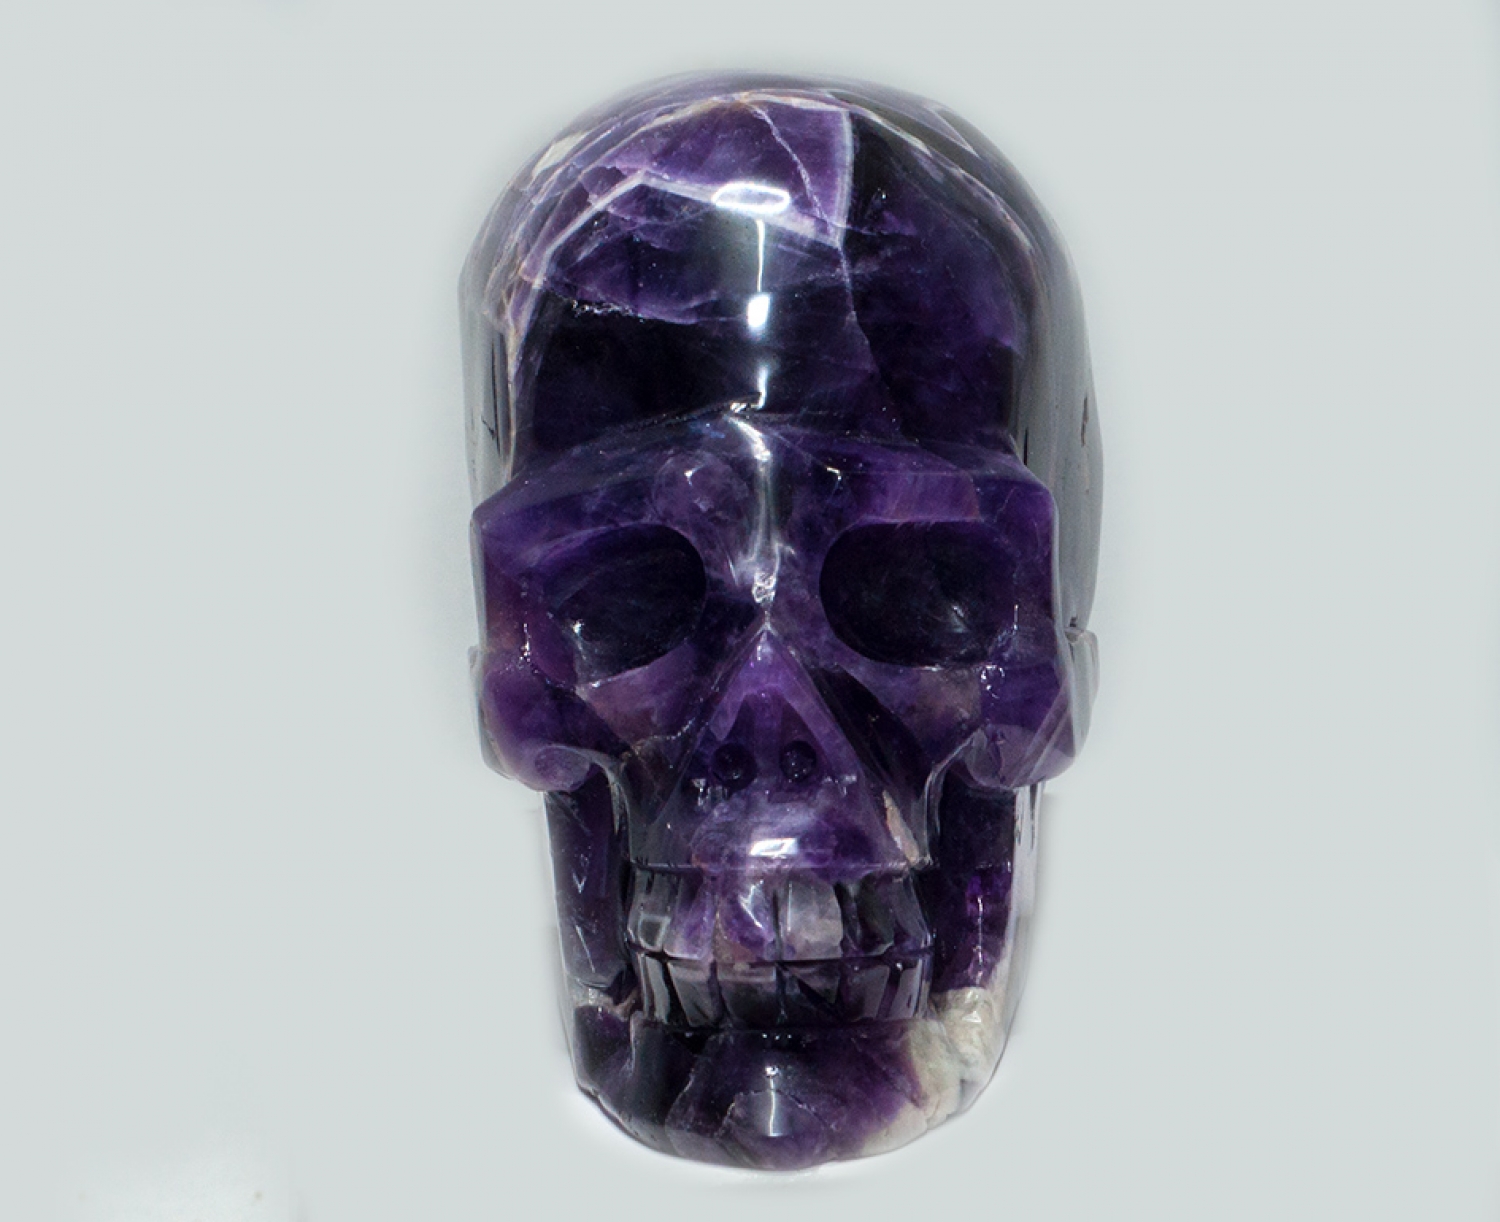 Kristallschädel, Skull, Chevron Amethyst, ca. 775 Gramm